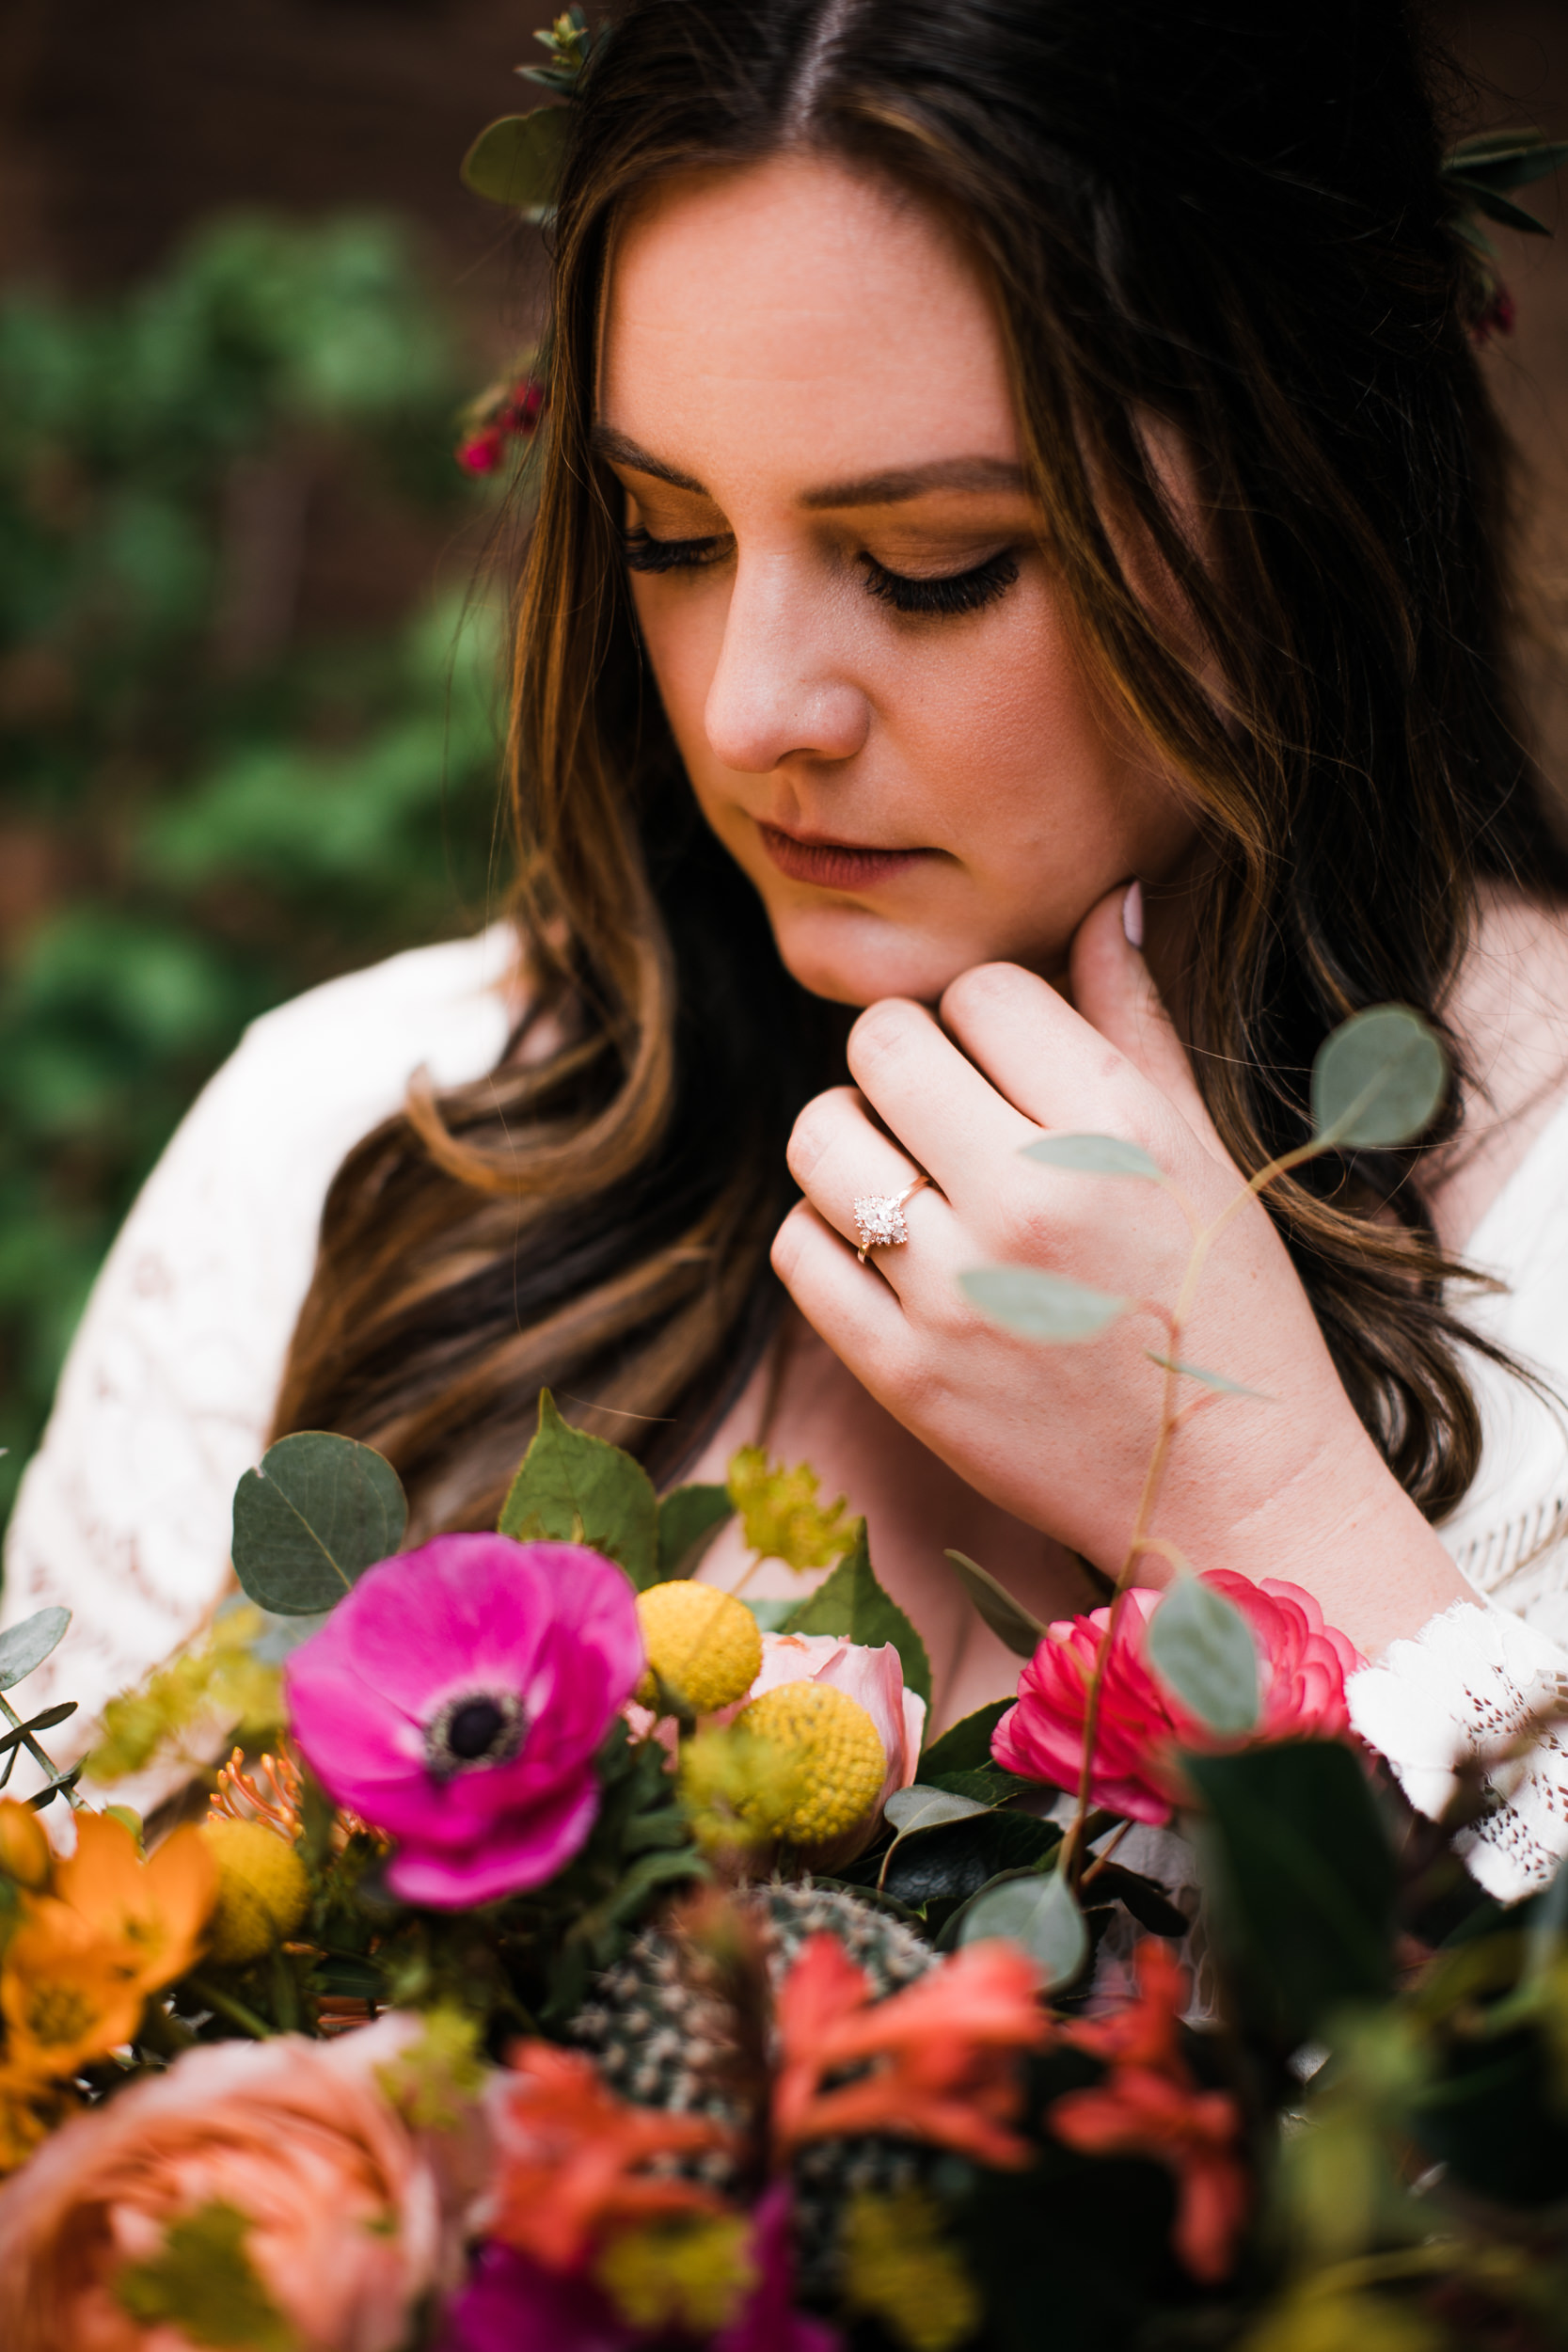 Zion national park elopement photographer | colorful elopement bouquet | alternate wedding ideas | the hearnes adventure photography